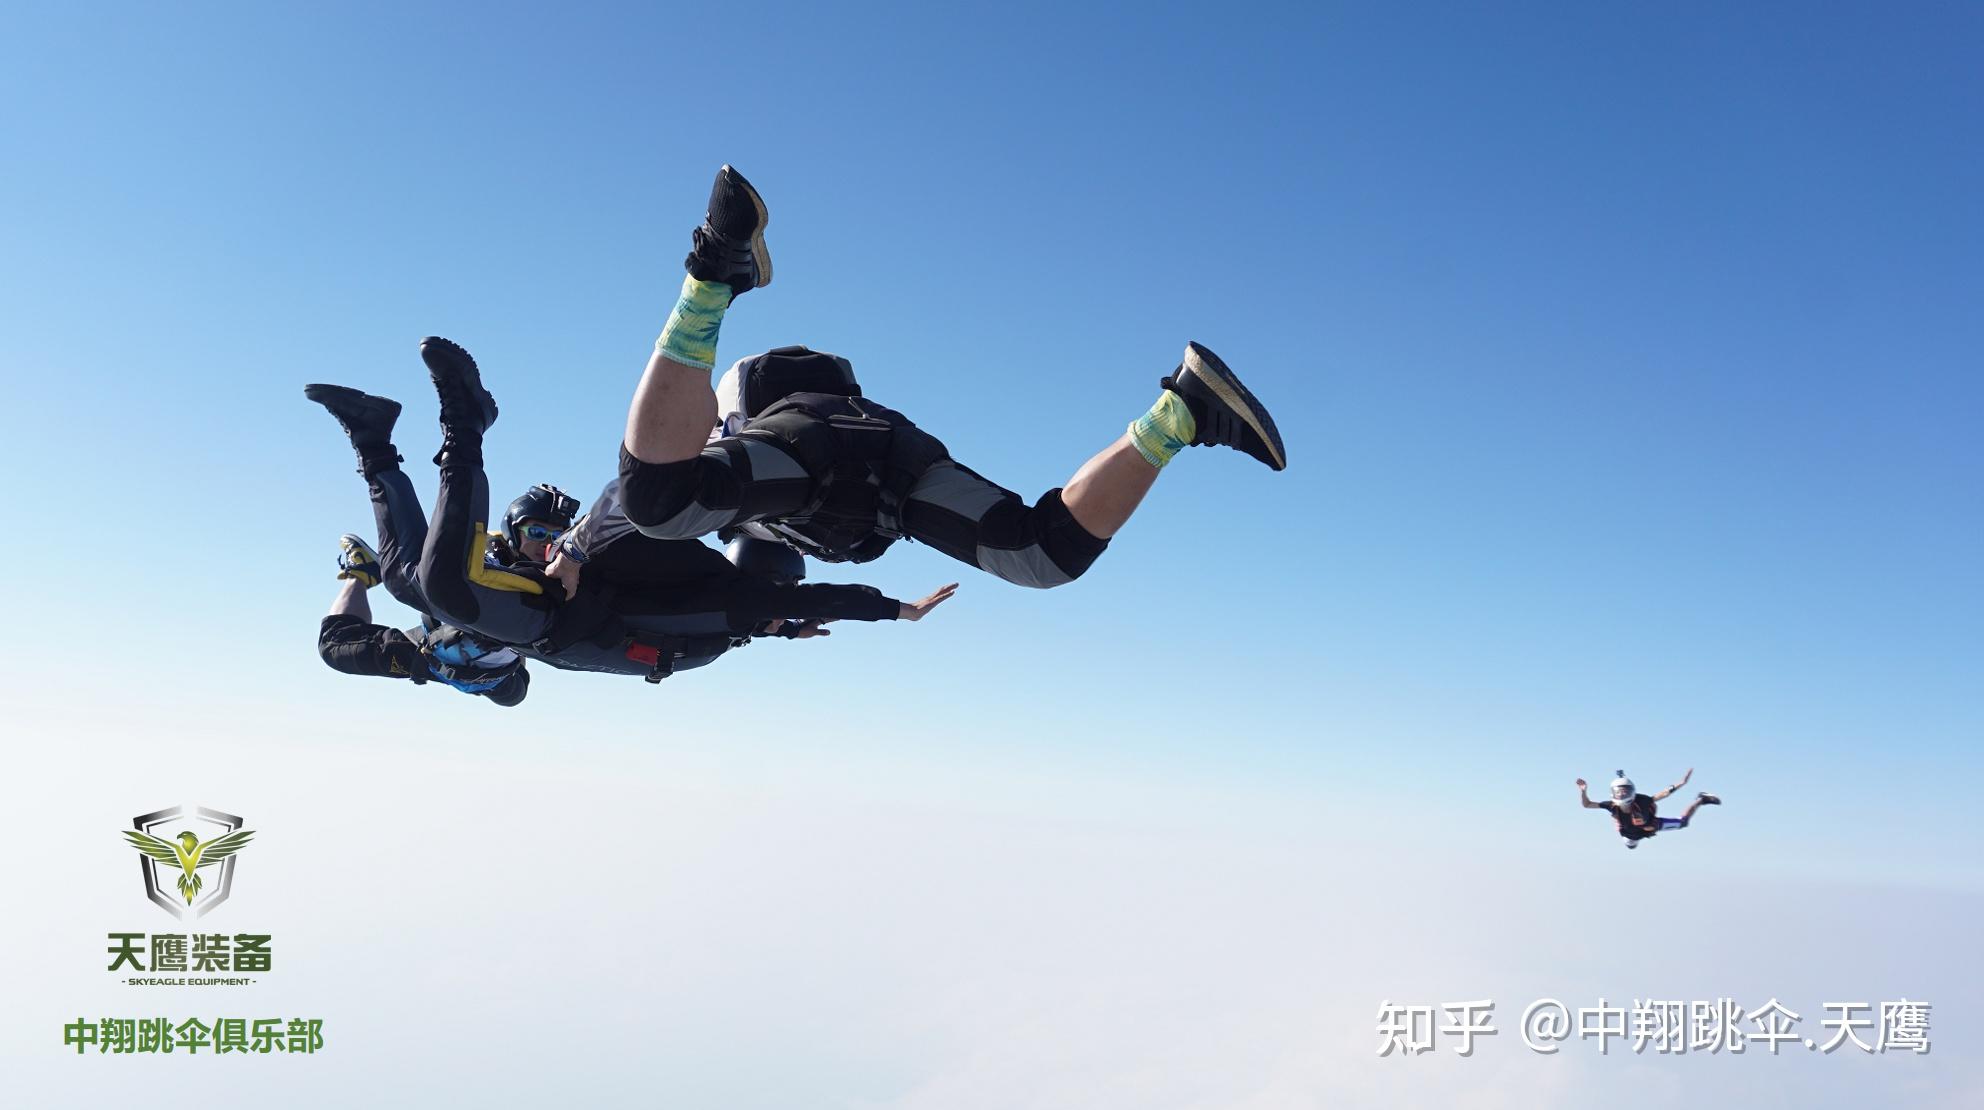 惊心动魄!世界首次低空跳伞成功穿越天生三桥(附高清图)__凤凰网